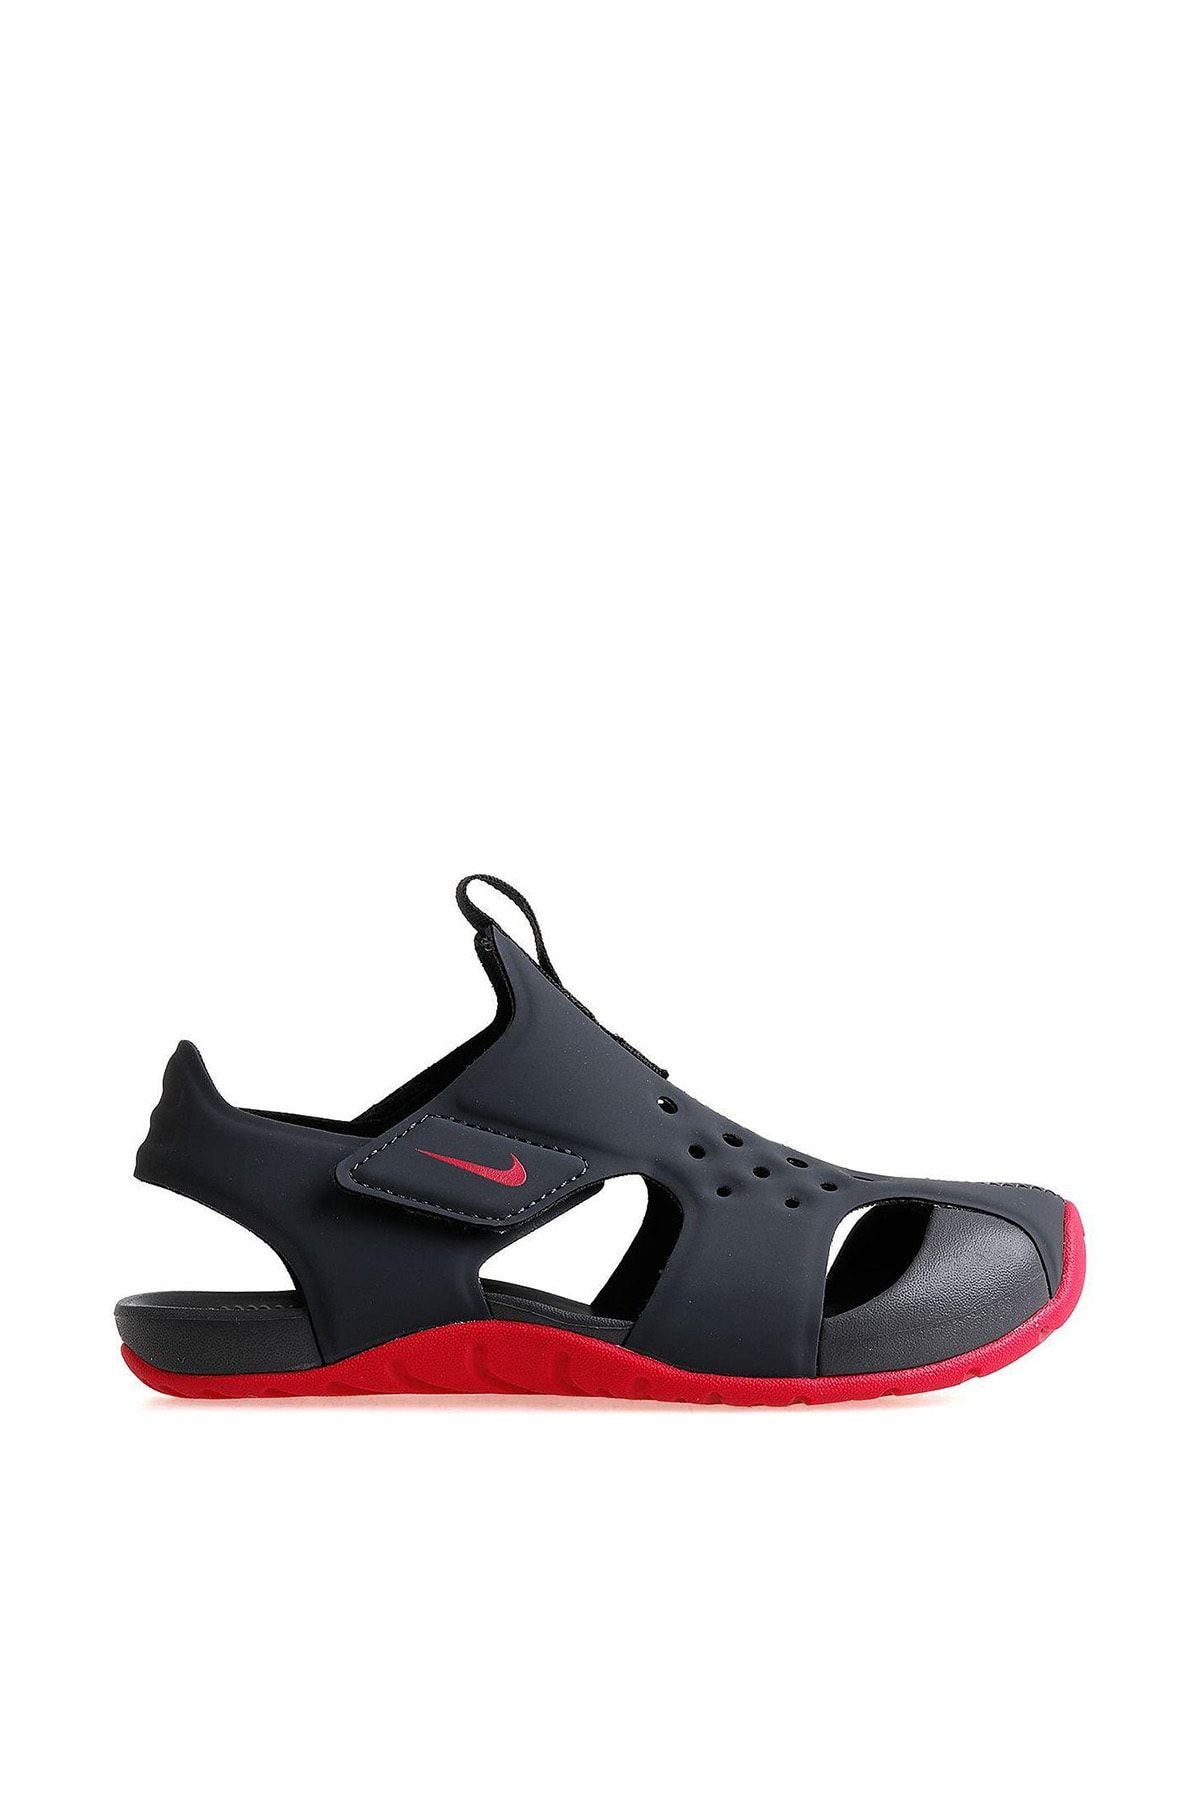 Nike 943828-001 Sunray Protect 2 Havuz Deniz Çocuk Sandalet